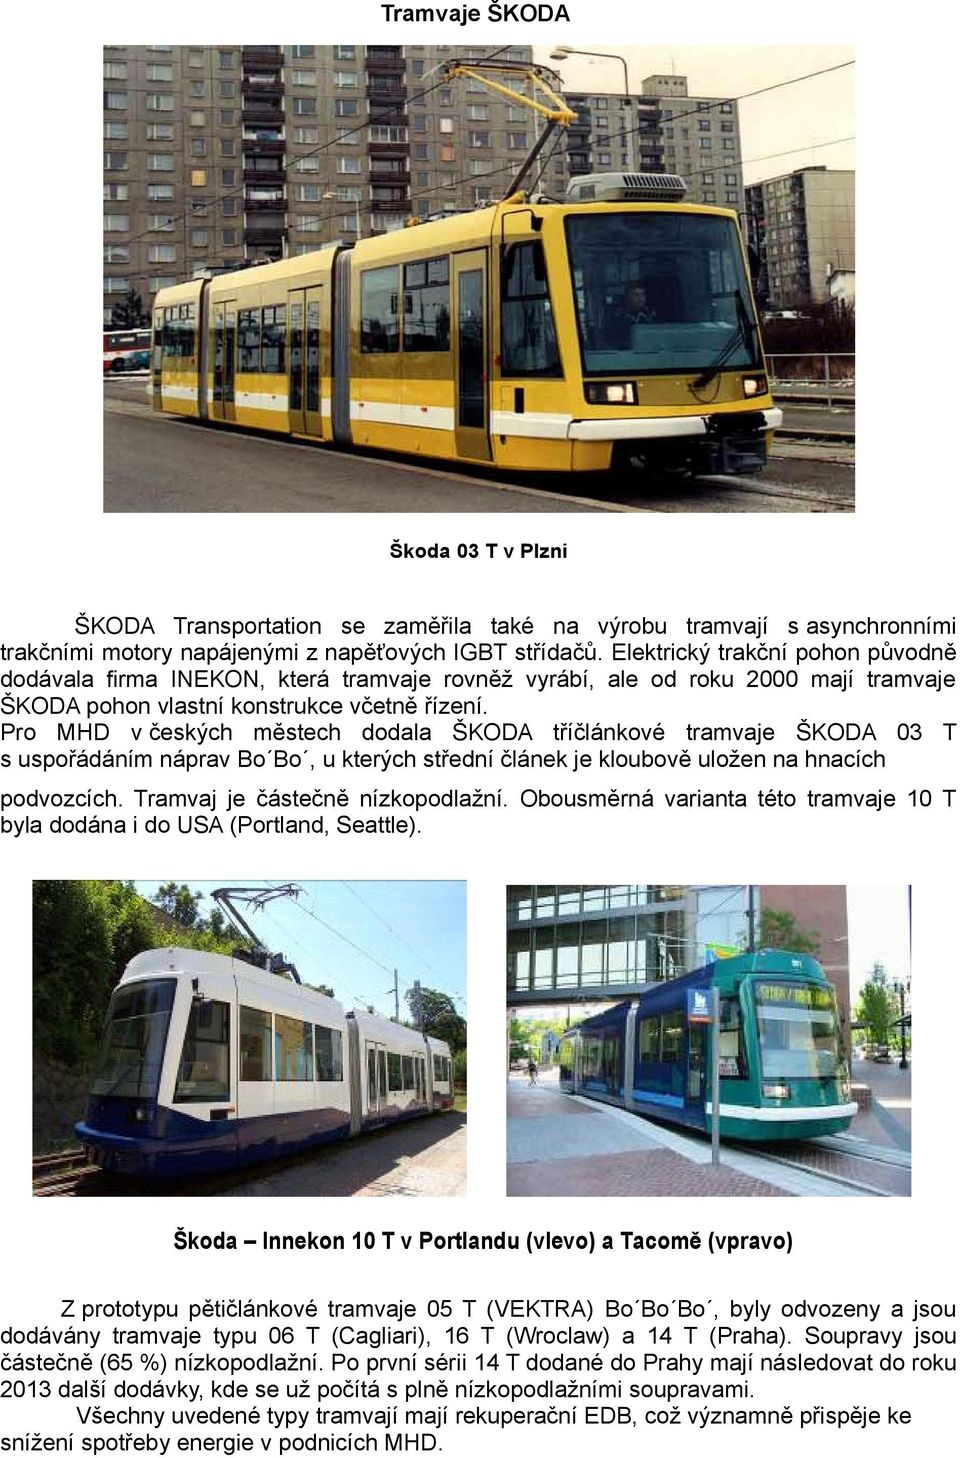 Pro MHD v českých městech dodala ŠKODA tříčlánkové tramvaje ŠKODA 03 T s uspořádáním náprav Bo Bo, u kterých střední článek je kloubově uložen na hnacích podvozcích. Tramvaj je částečně nízkopodlažní.